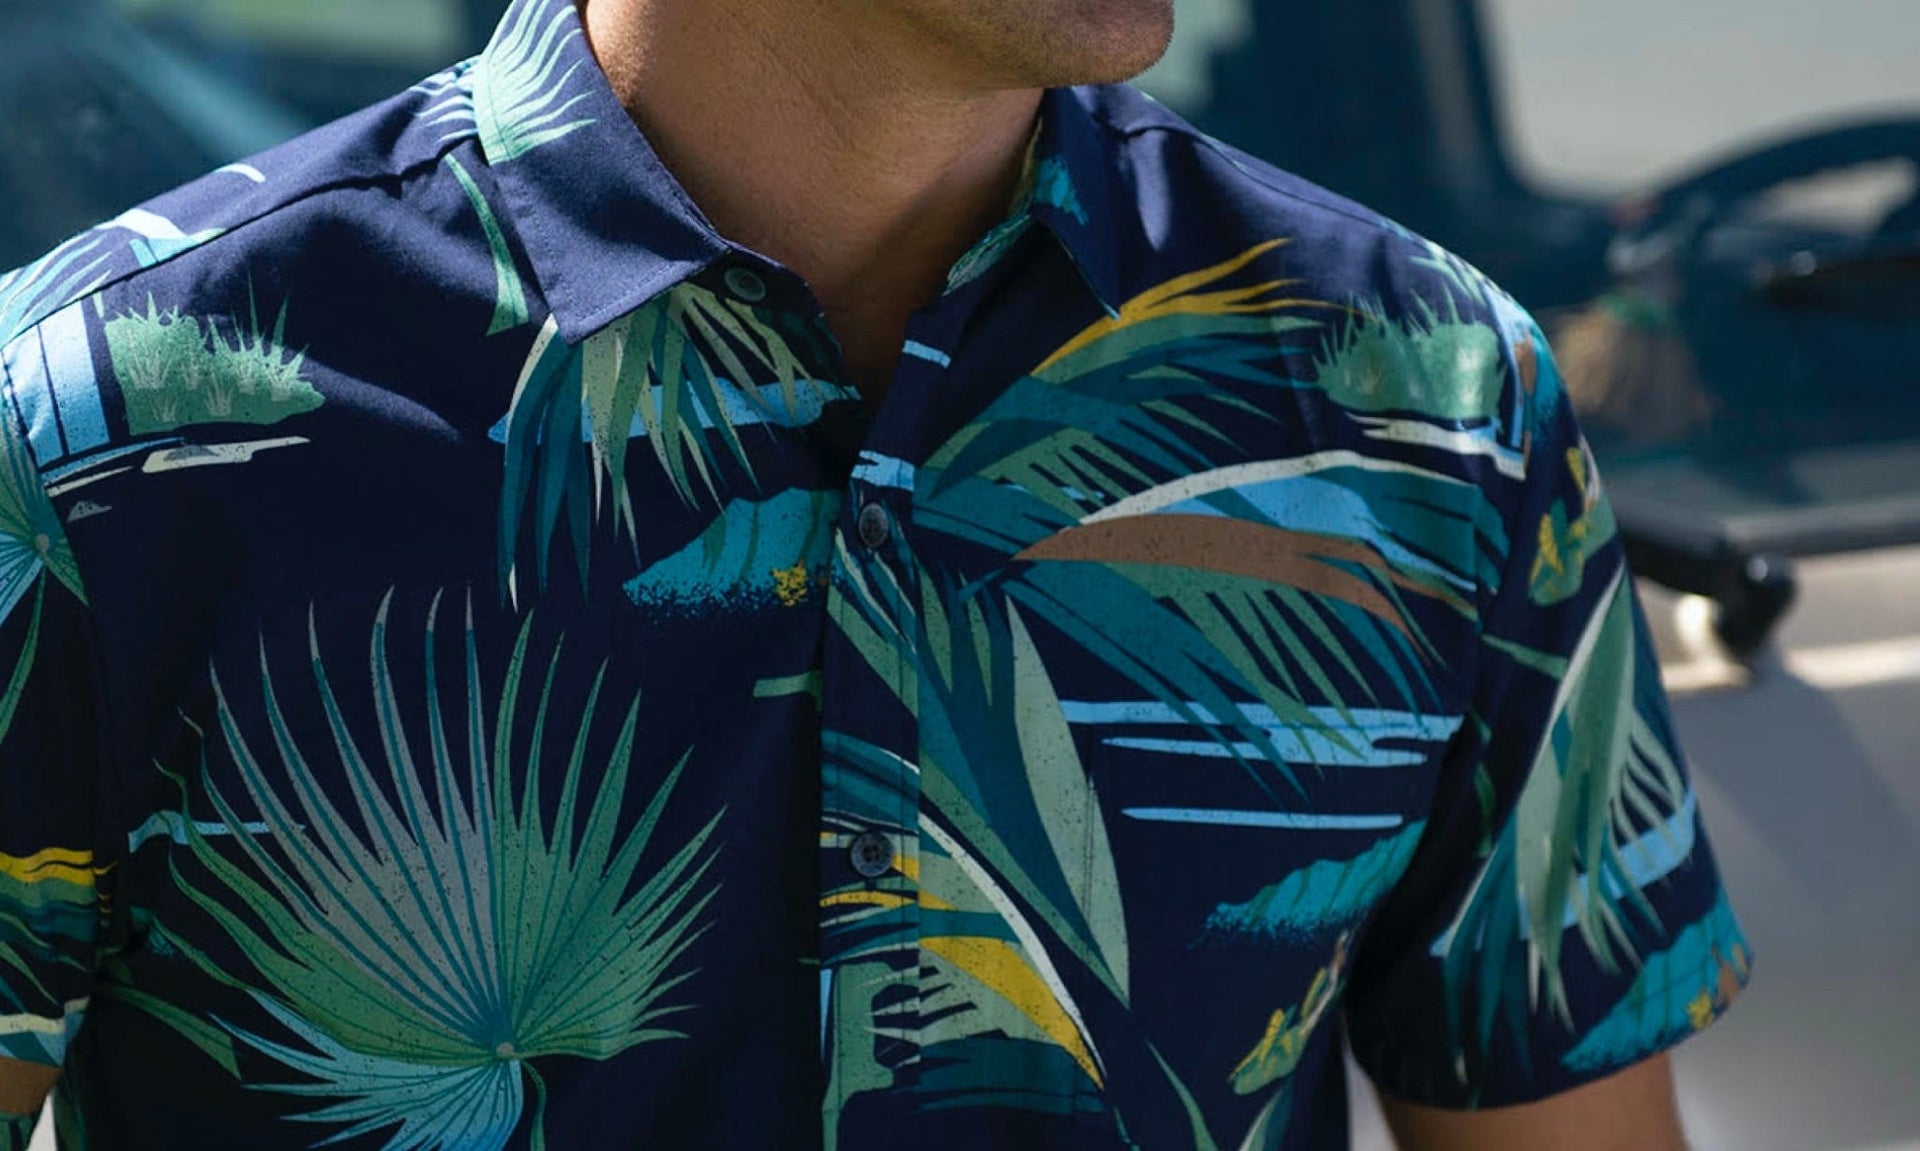 Kahala x Nick Kuchar "Mauka" Aloha Shirt Collaboration